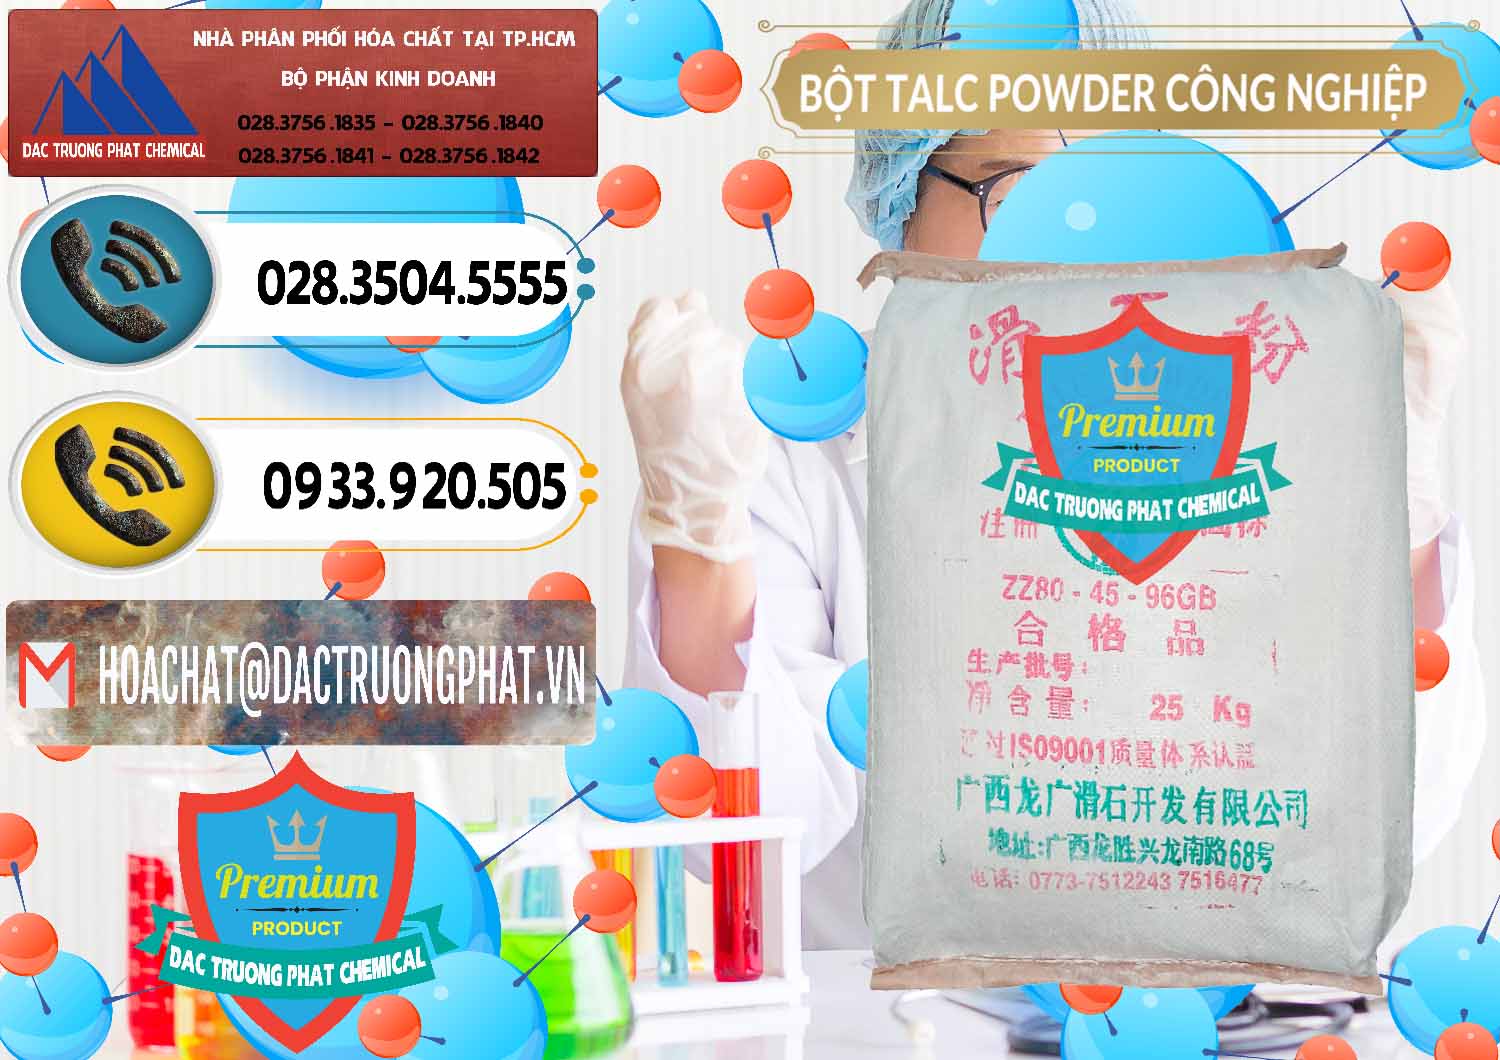 Nơi chuyên bán - cung ứng Bột Talc Powder Công Nghiệp Trung Quốc China - 0037 - Chuyên bán ( phân phối ) hóa chất tại TP.HCM - hoachatdetnhuom.vn